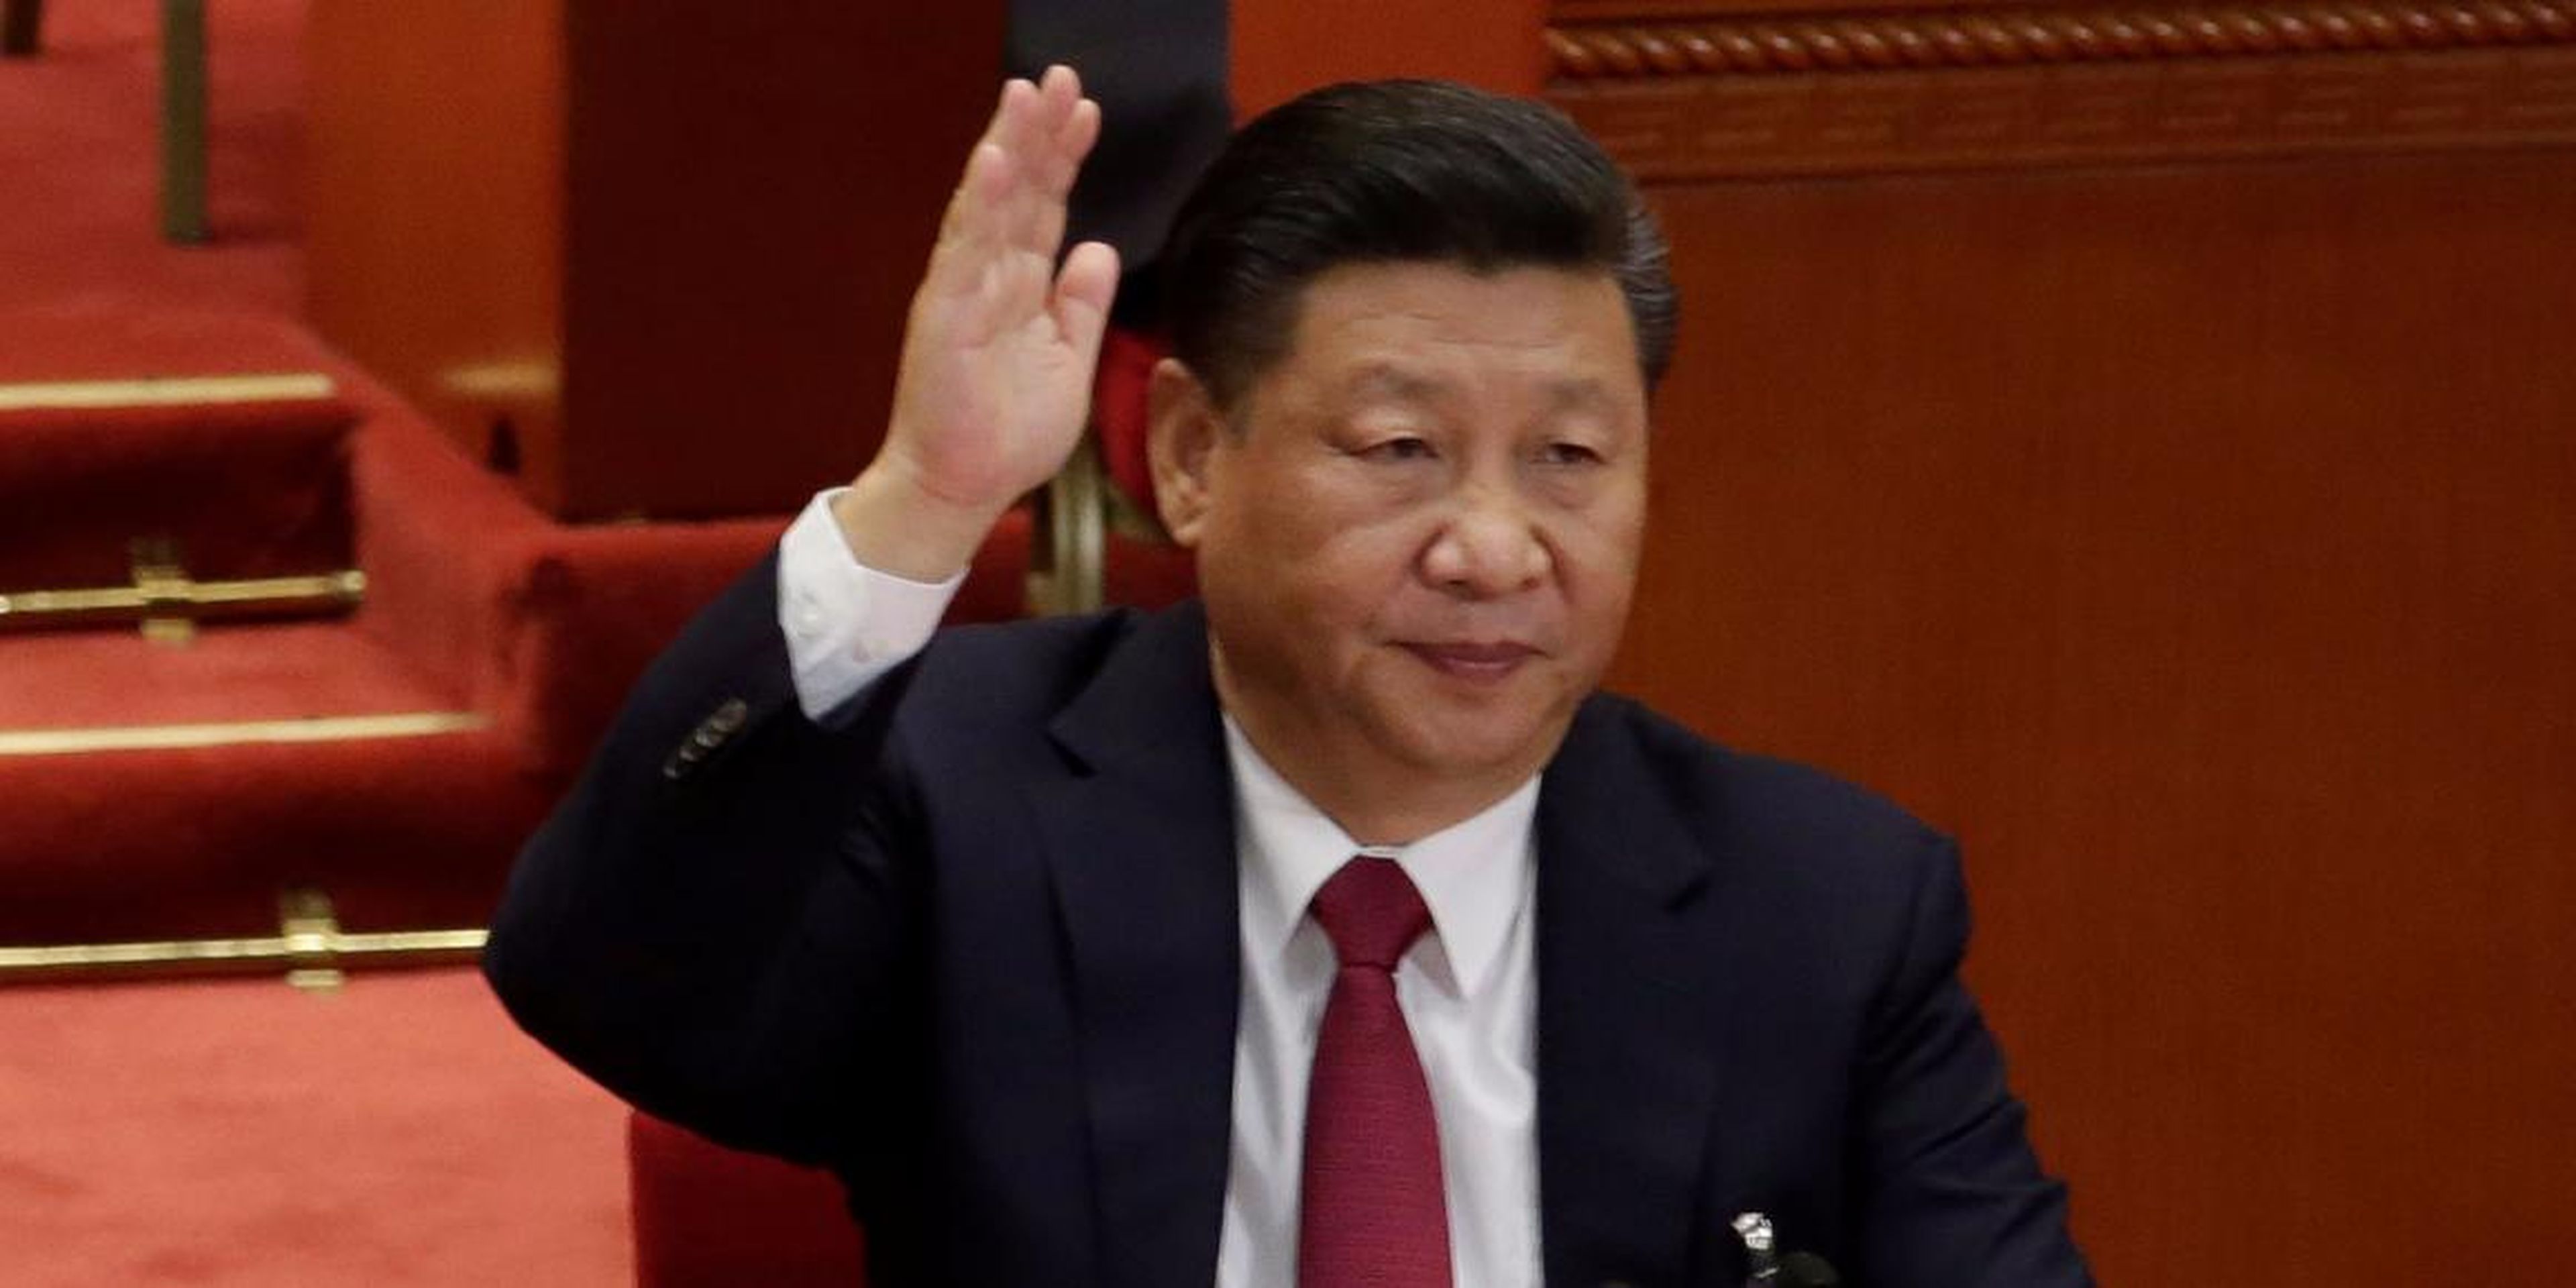 Xi Jinping in Beijing in October 2017.